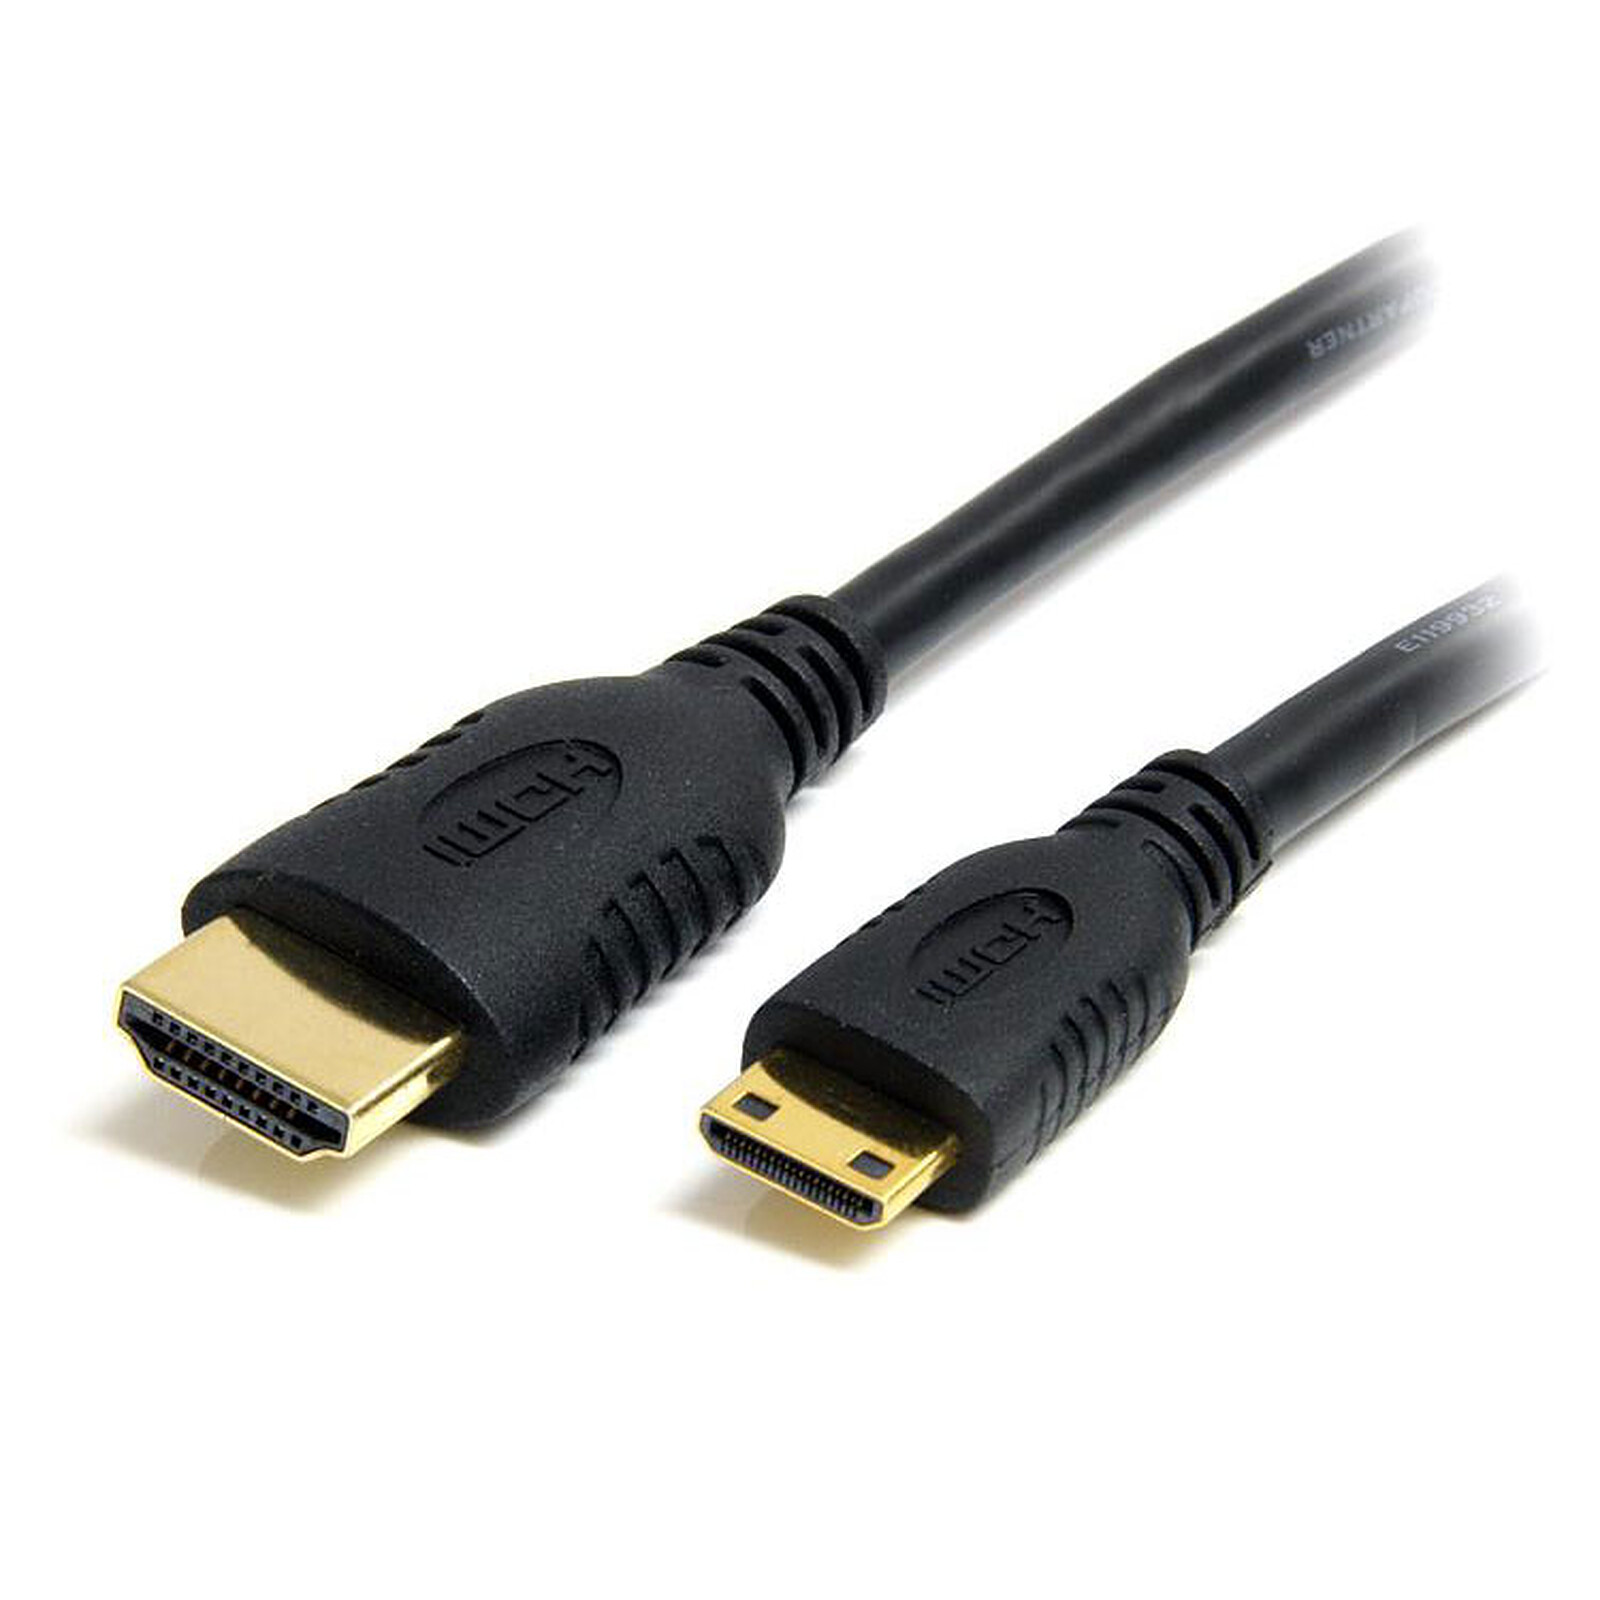 StarTech.com Câble HDMI vers DVI-D de 50cm - Mâle / Mâle - Noir